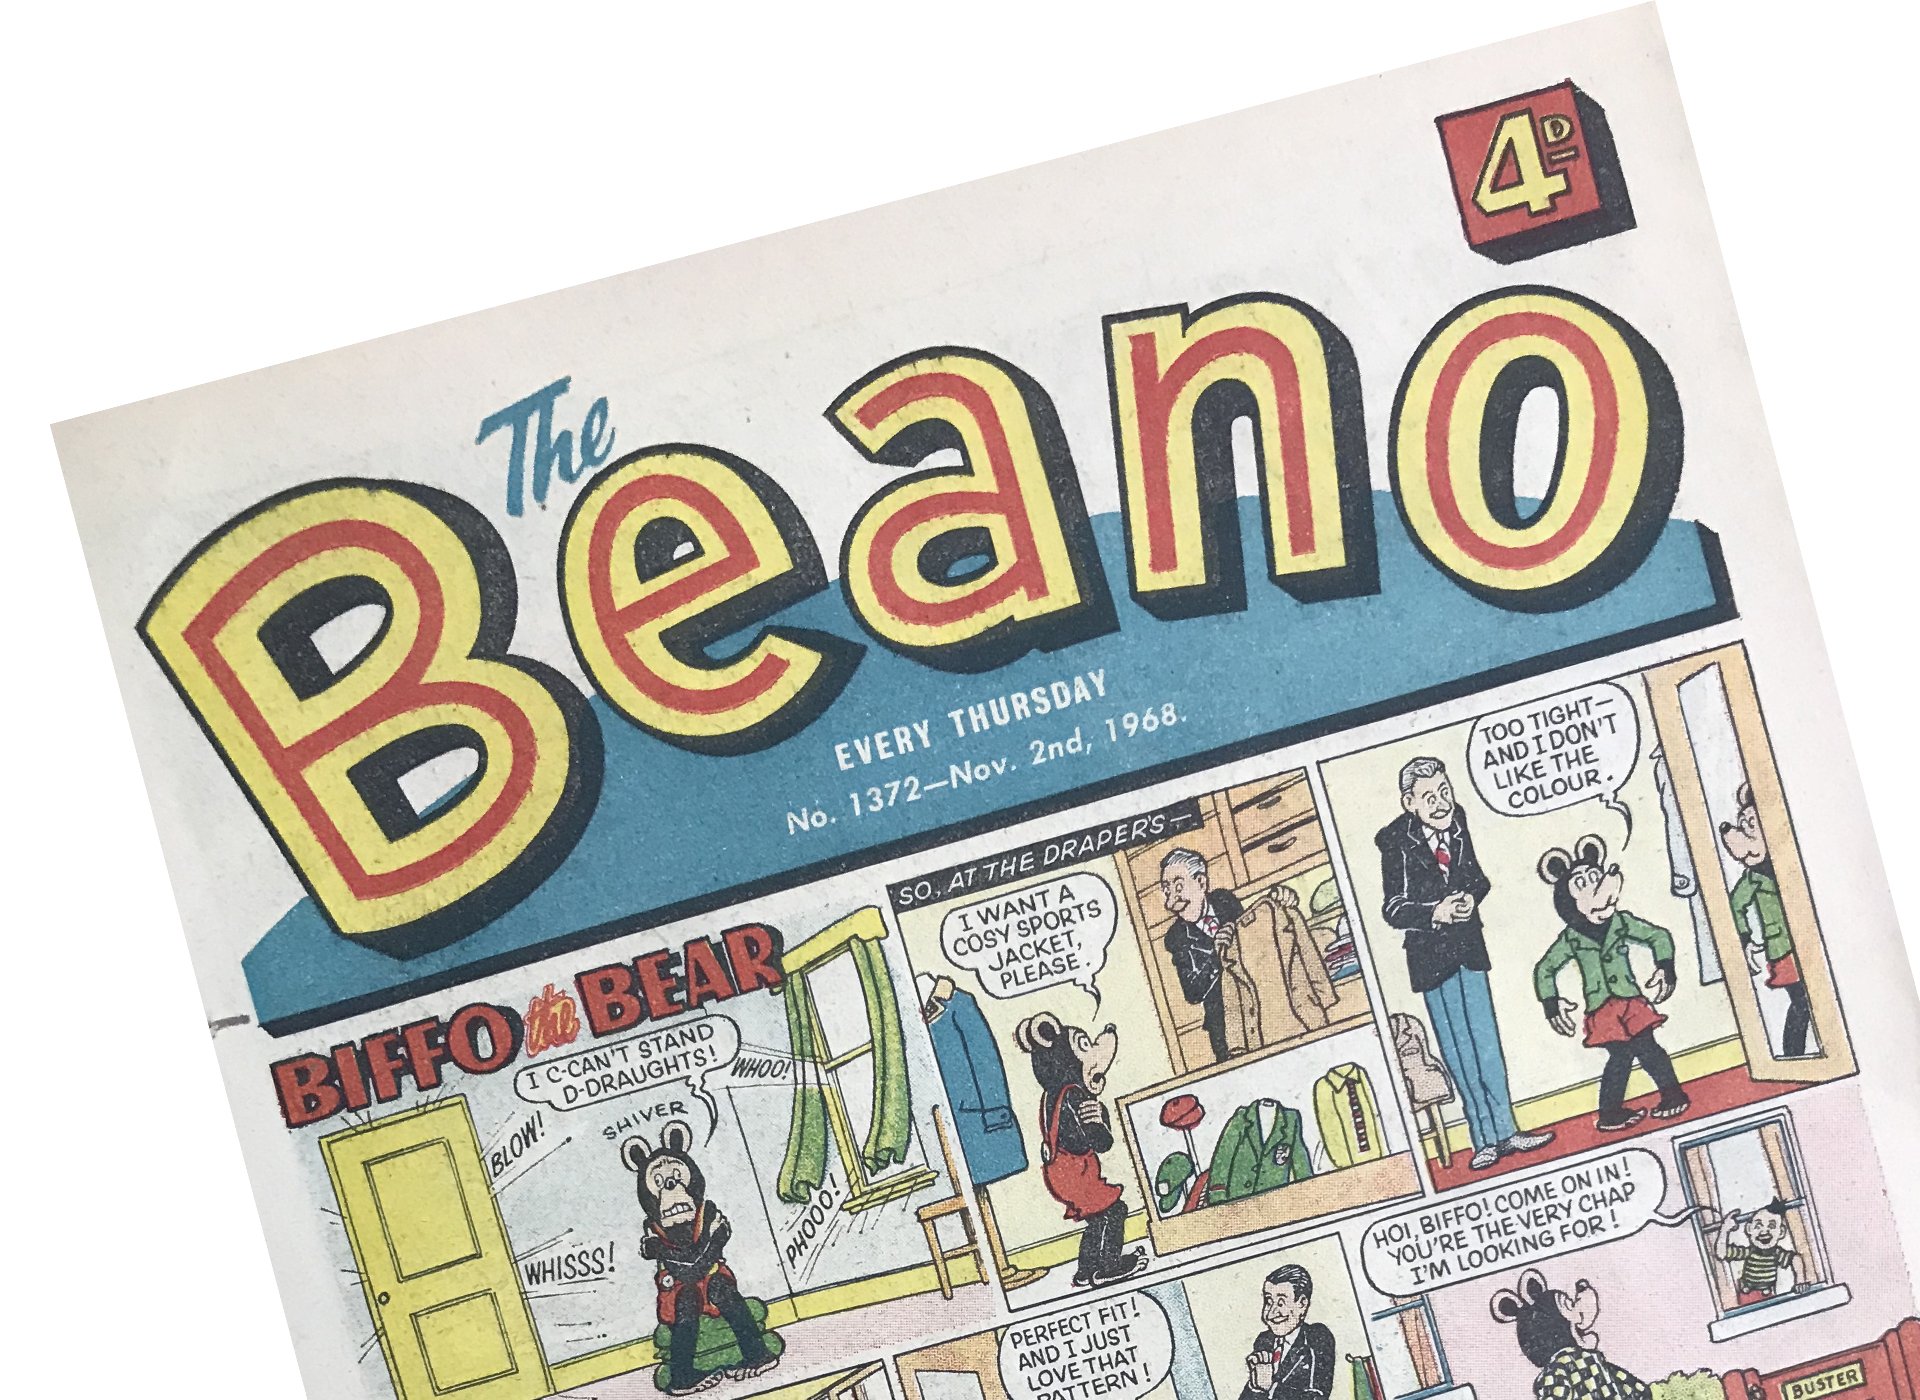 Beano No. 1372 cover